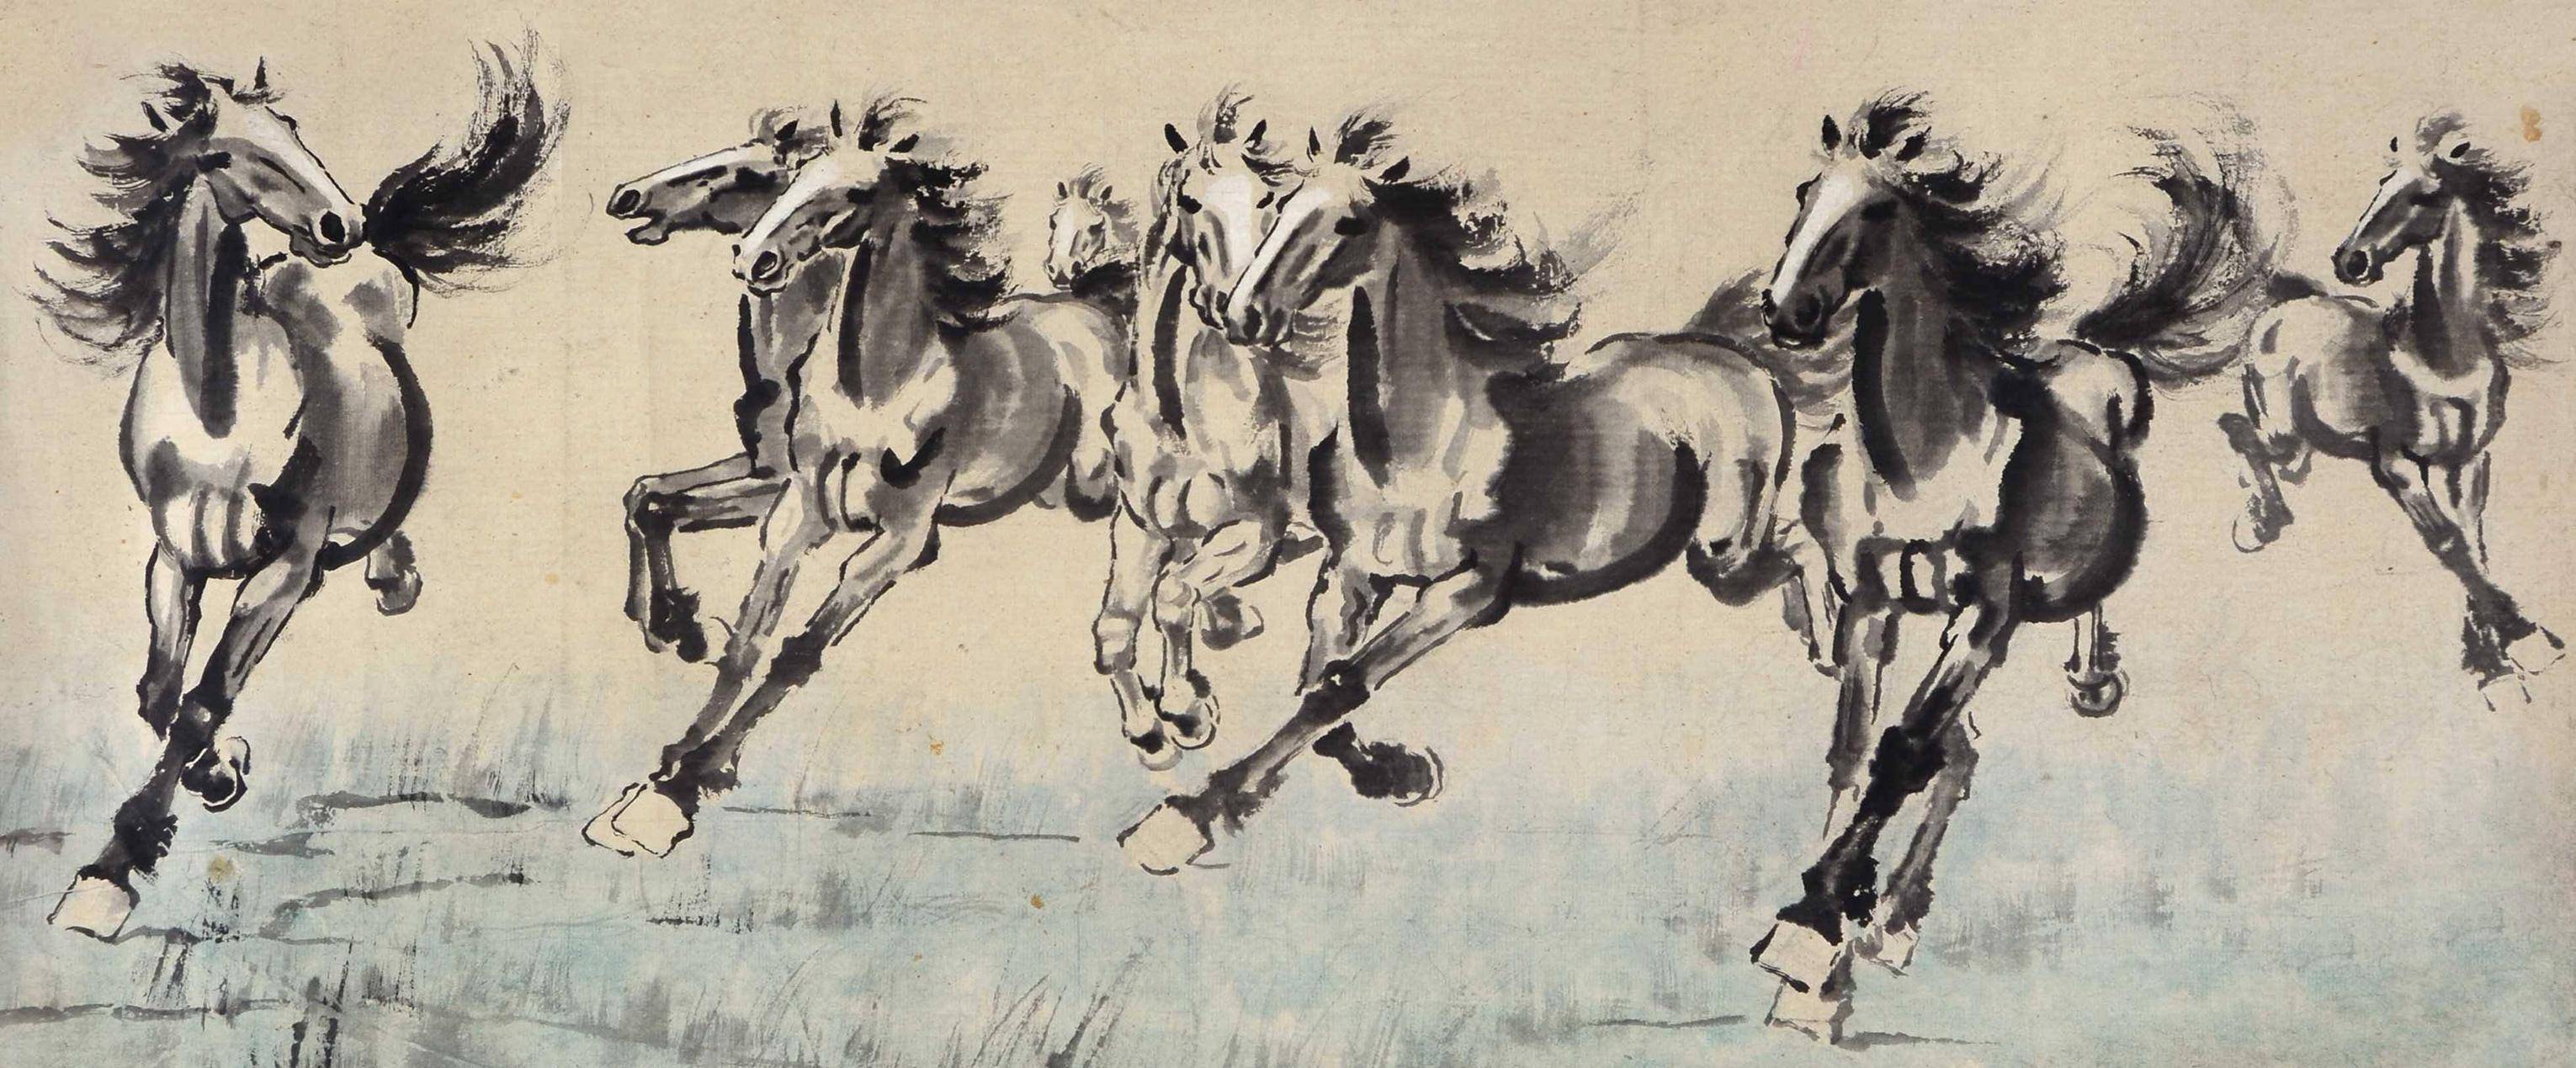 徐悲鸿一生独爱的《八骏图》,他画的马,在意蕴上有明显的创新和开拓